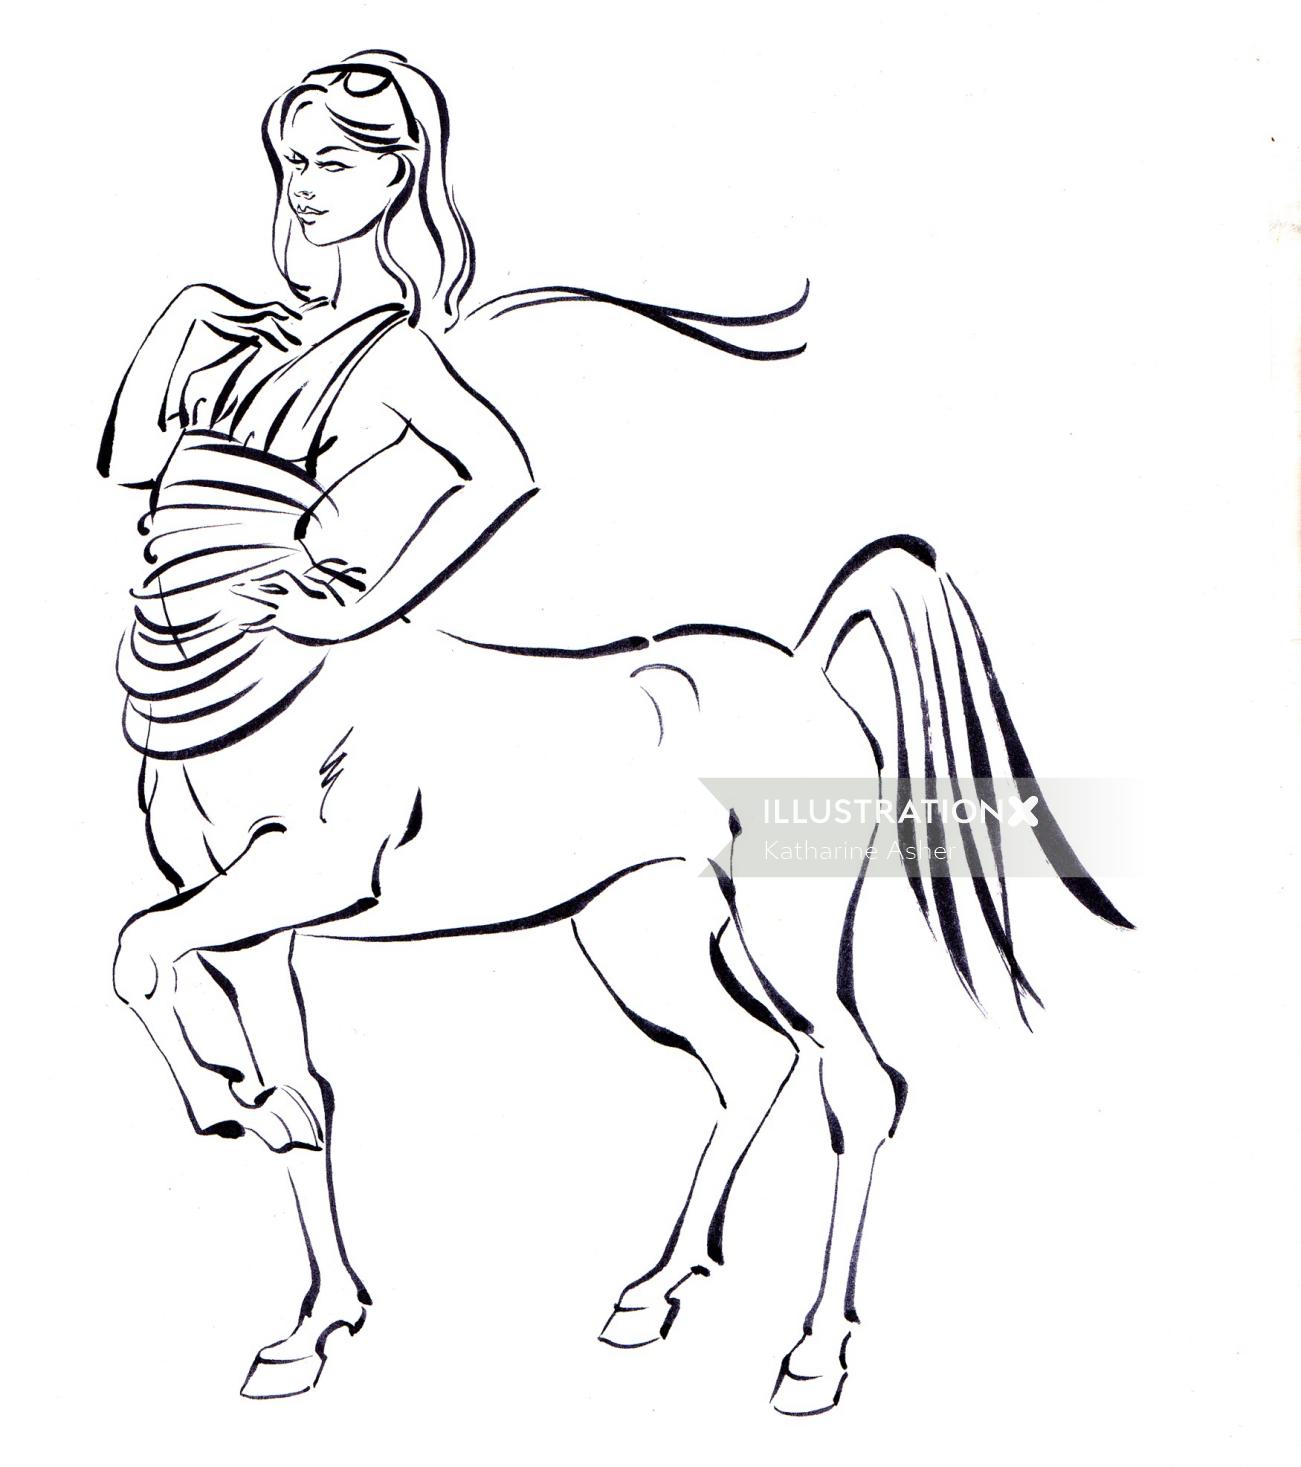 Ilustración de storyboard de mujer y caballo